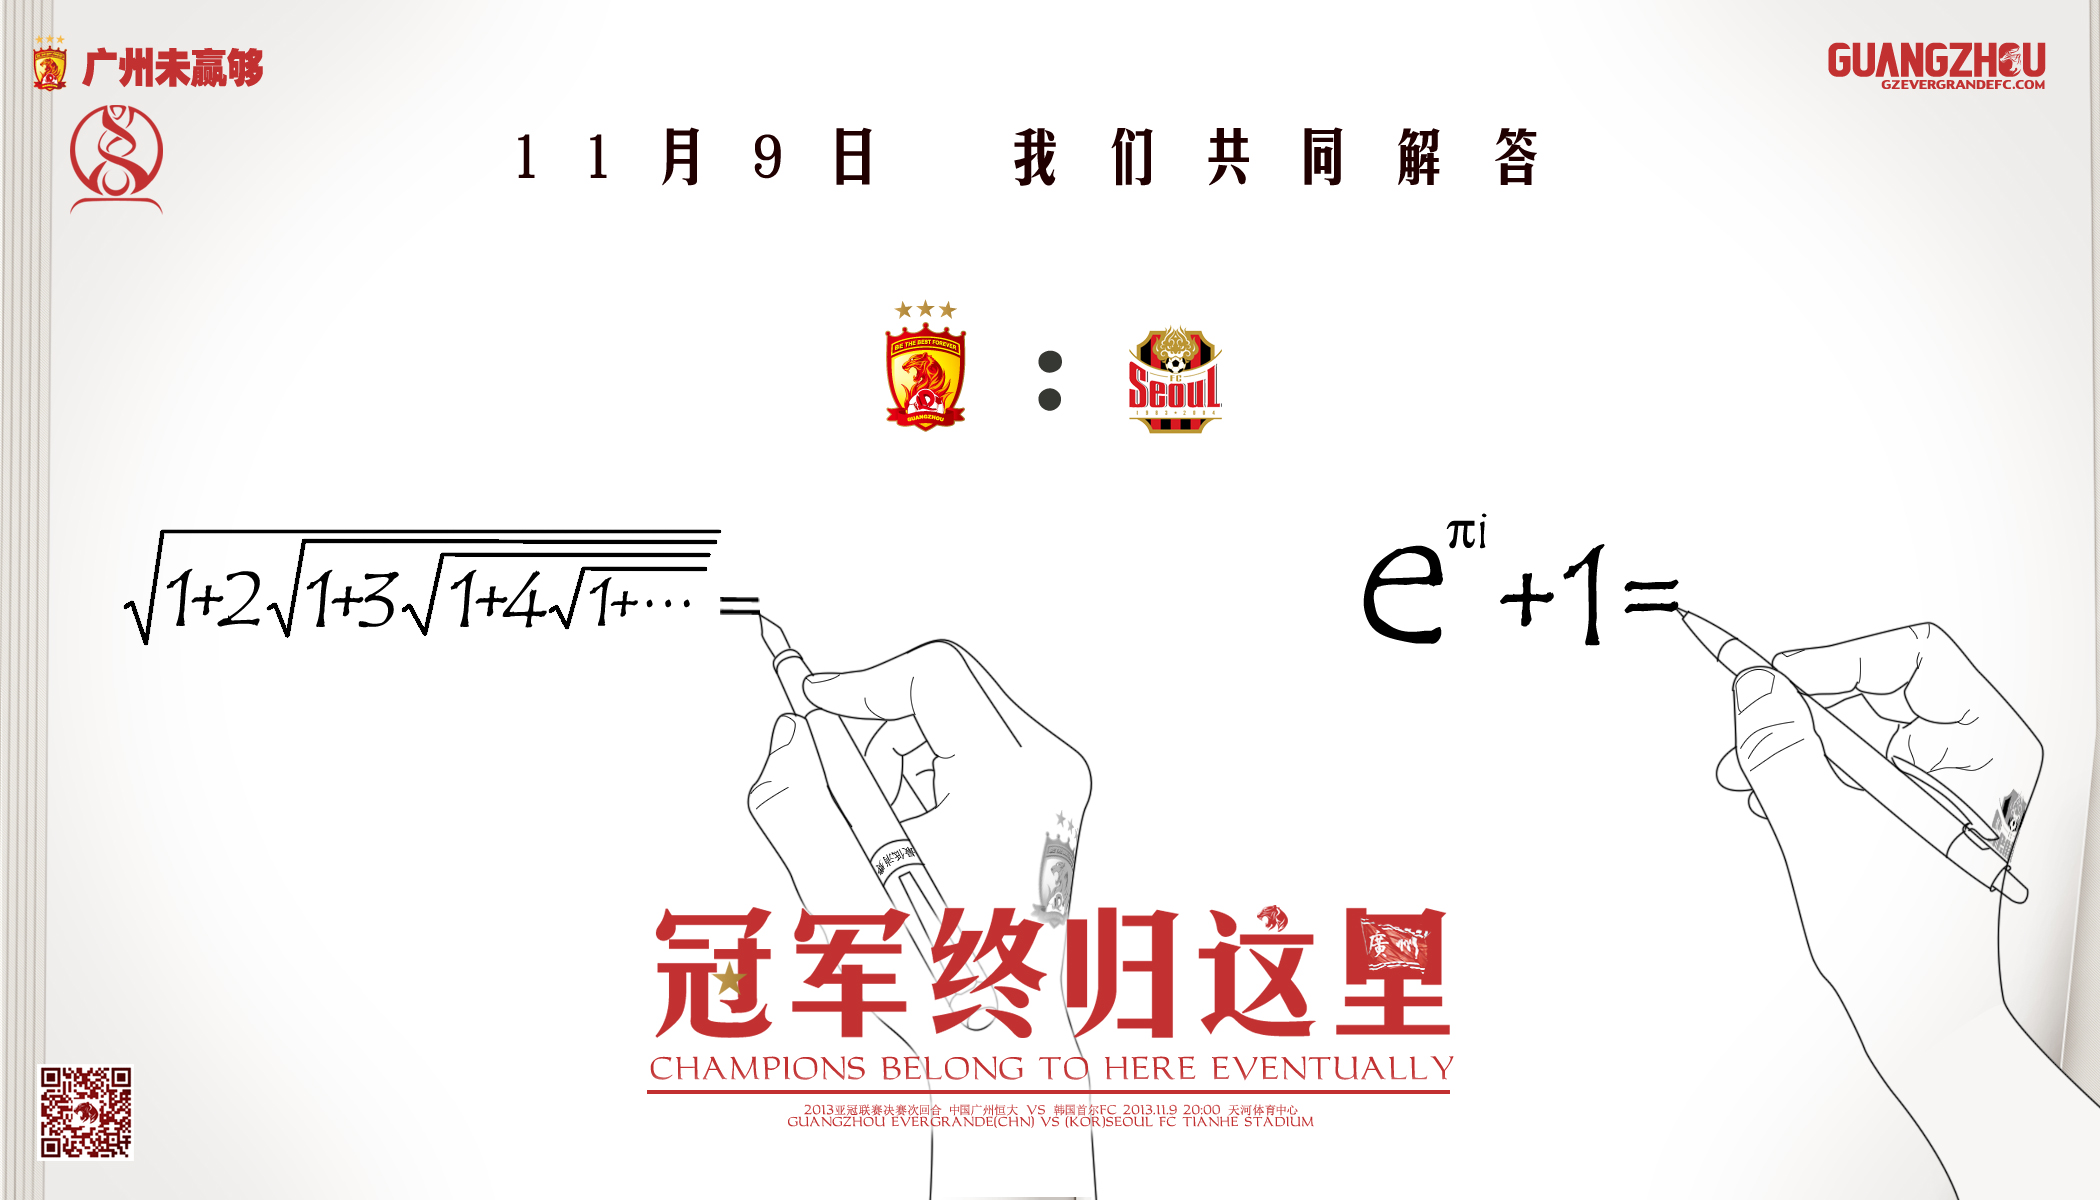 广州恒大2013年亚冠夺冠历程-海报形式回顾